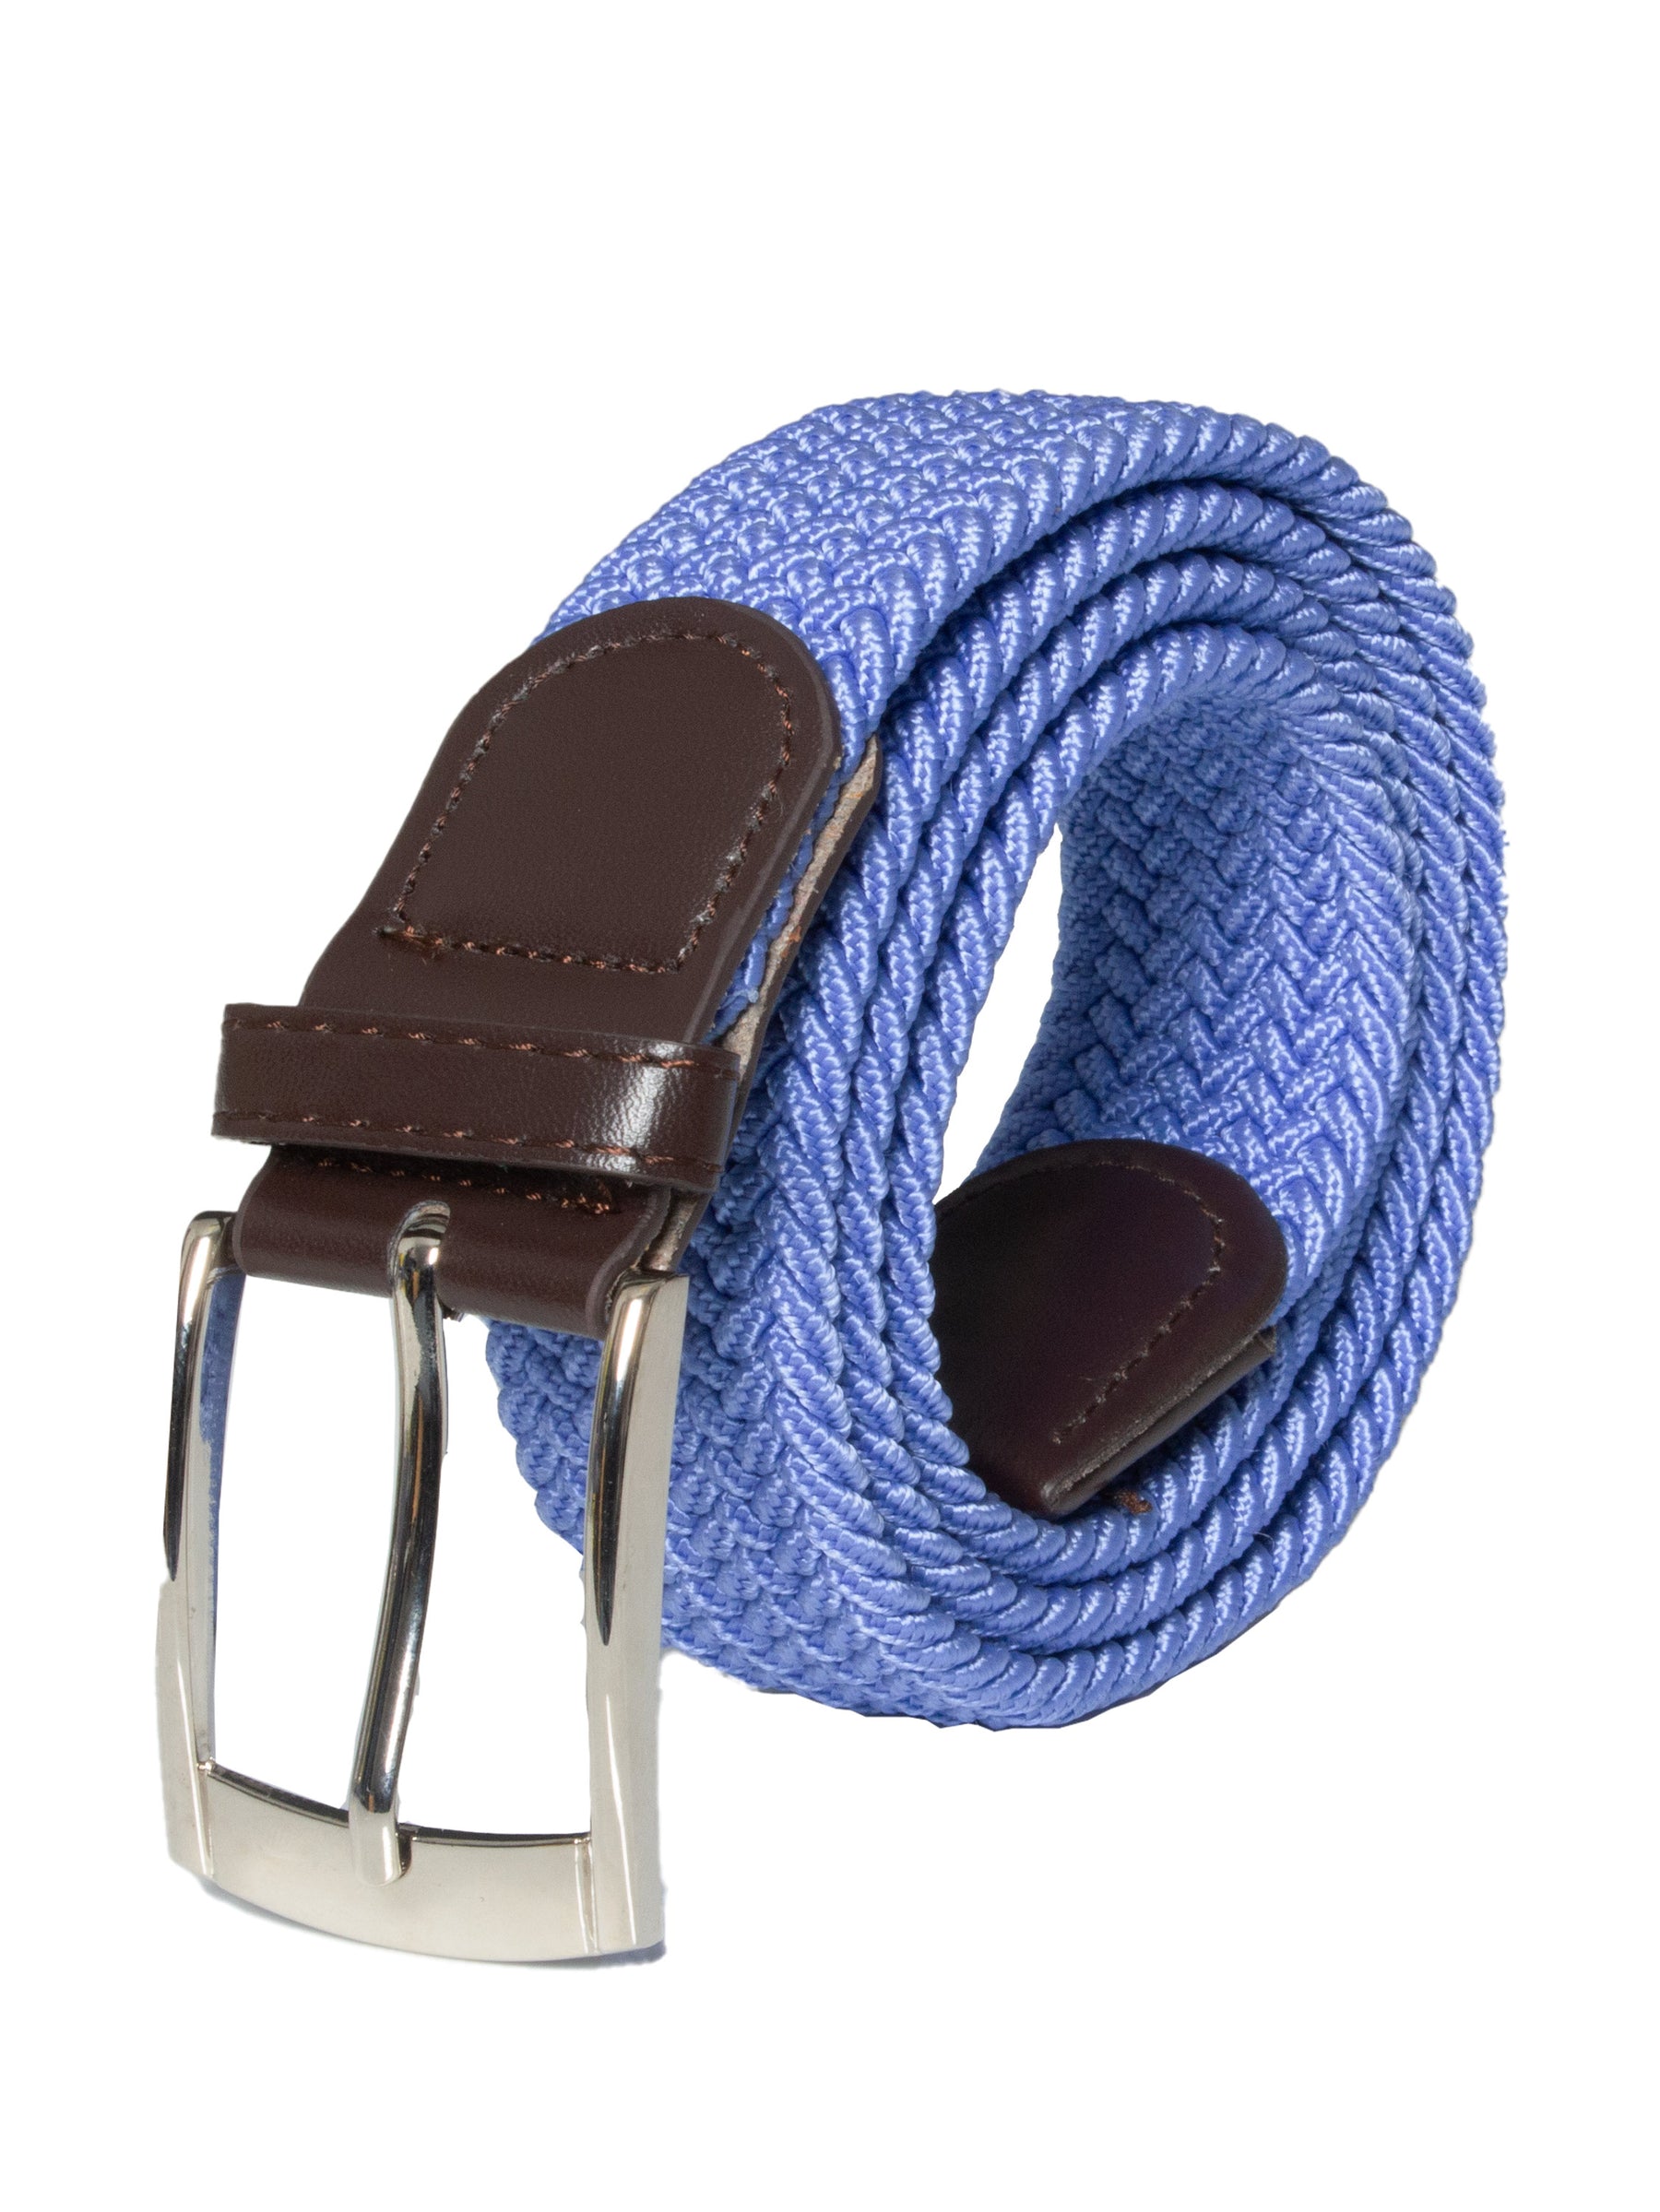 Men's Elastic Braid Belt